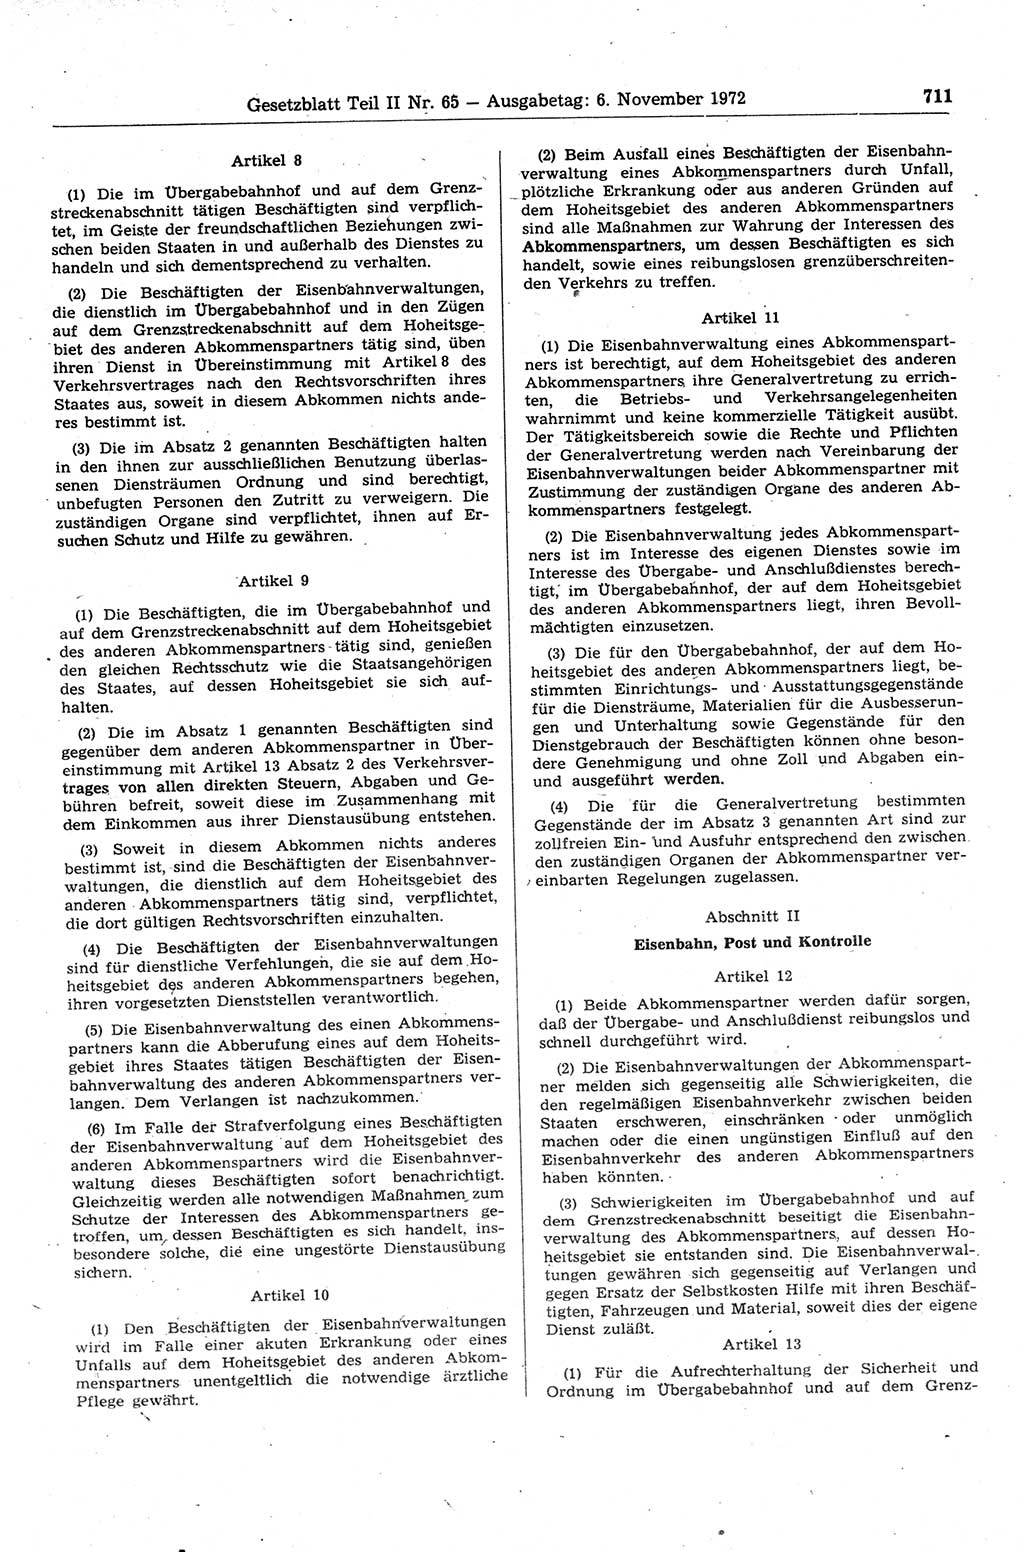 Gesetzblatt (GBl.) der Deutschen Demokratischen Republik (DDR) Teil ⅠⅠ 1972, Seite 711 (GBl. DDR ⅠⅠ 1972, S. 711)